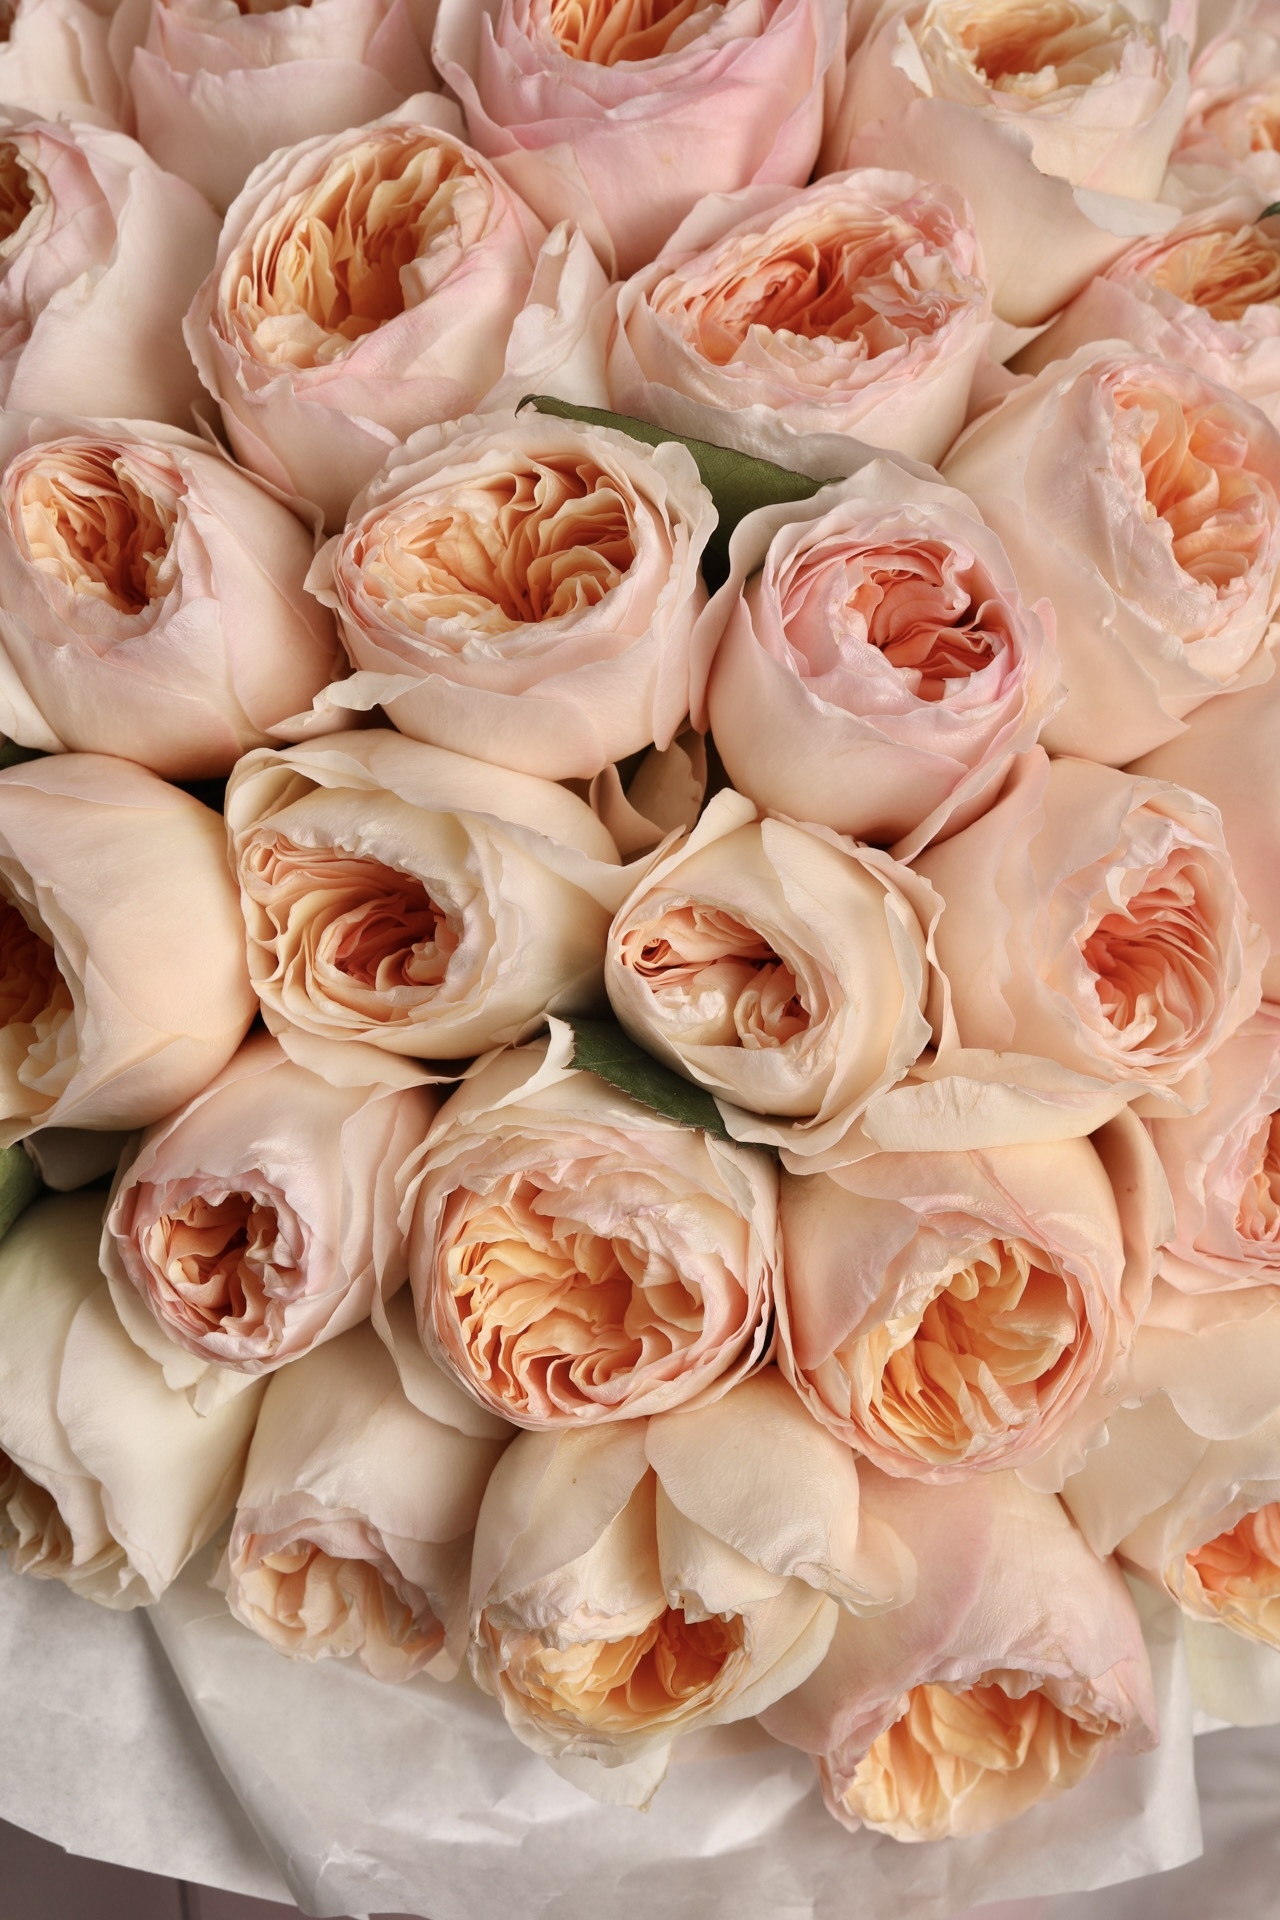 Пионовидная роза название и фото